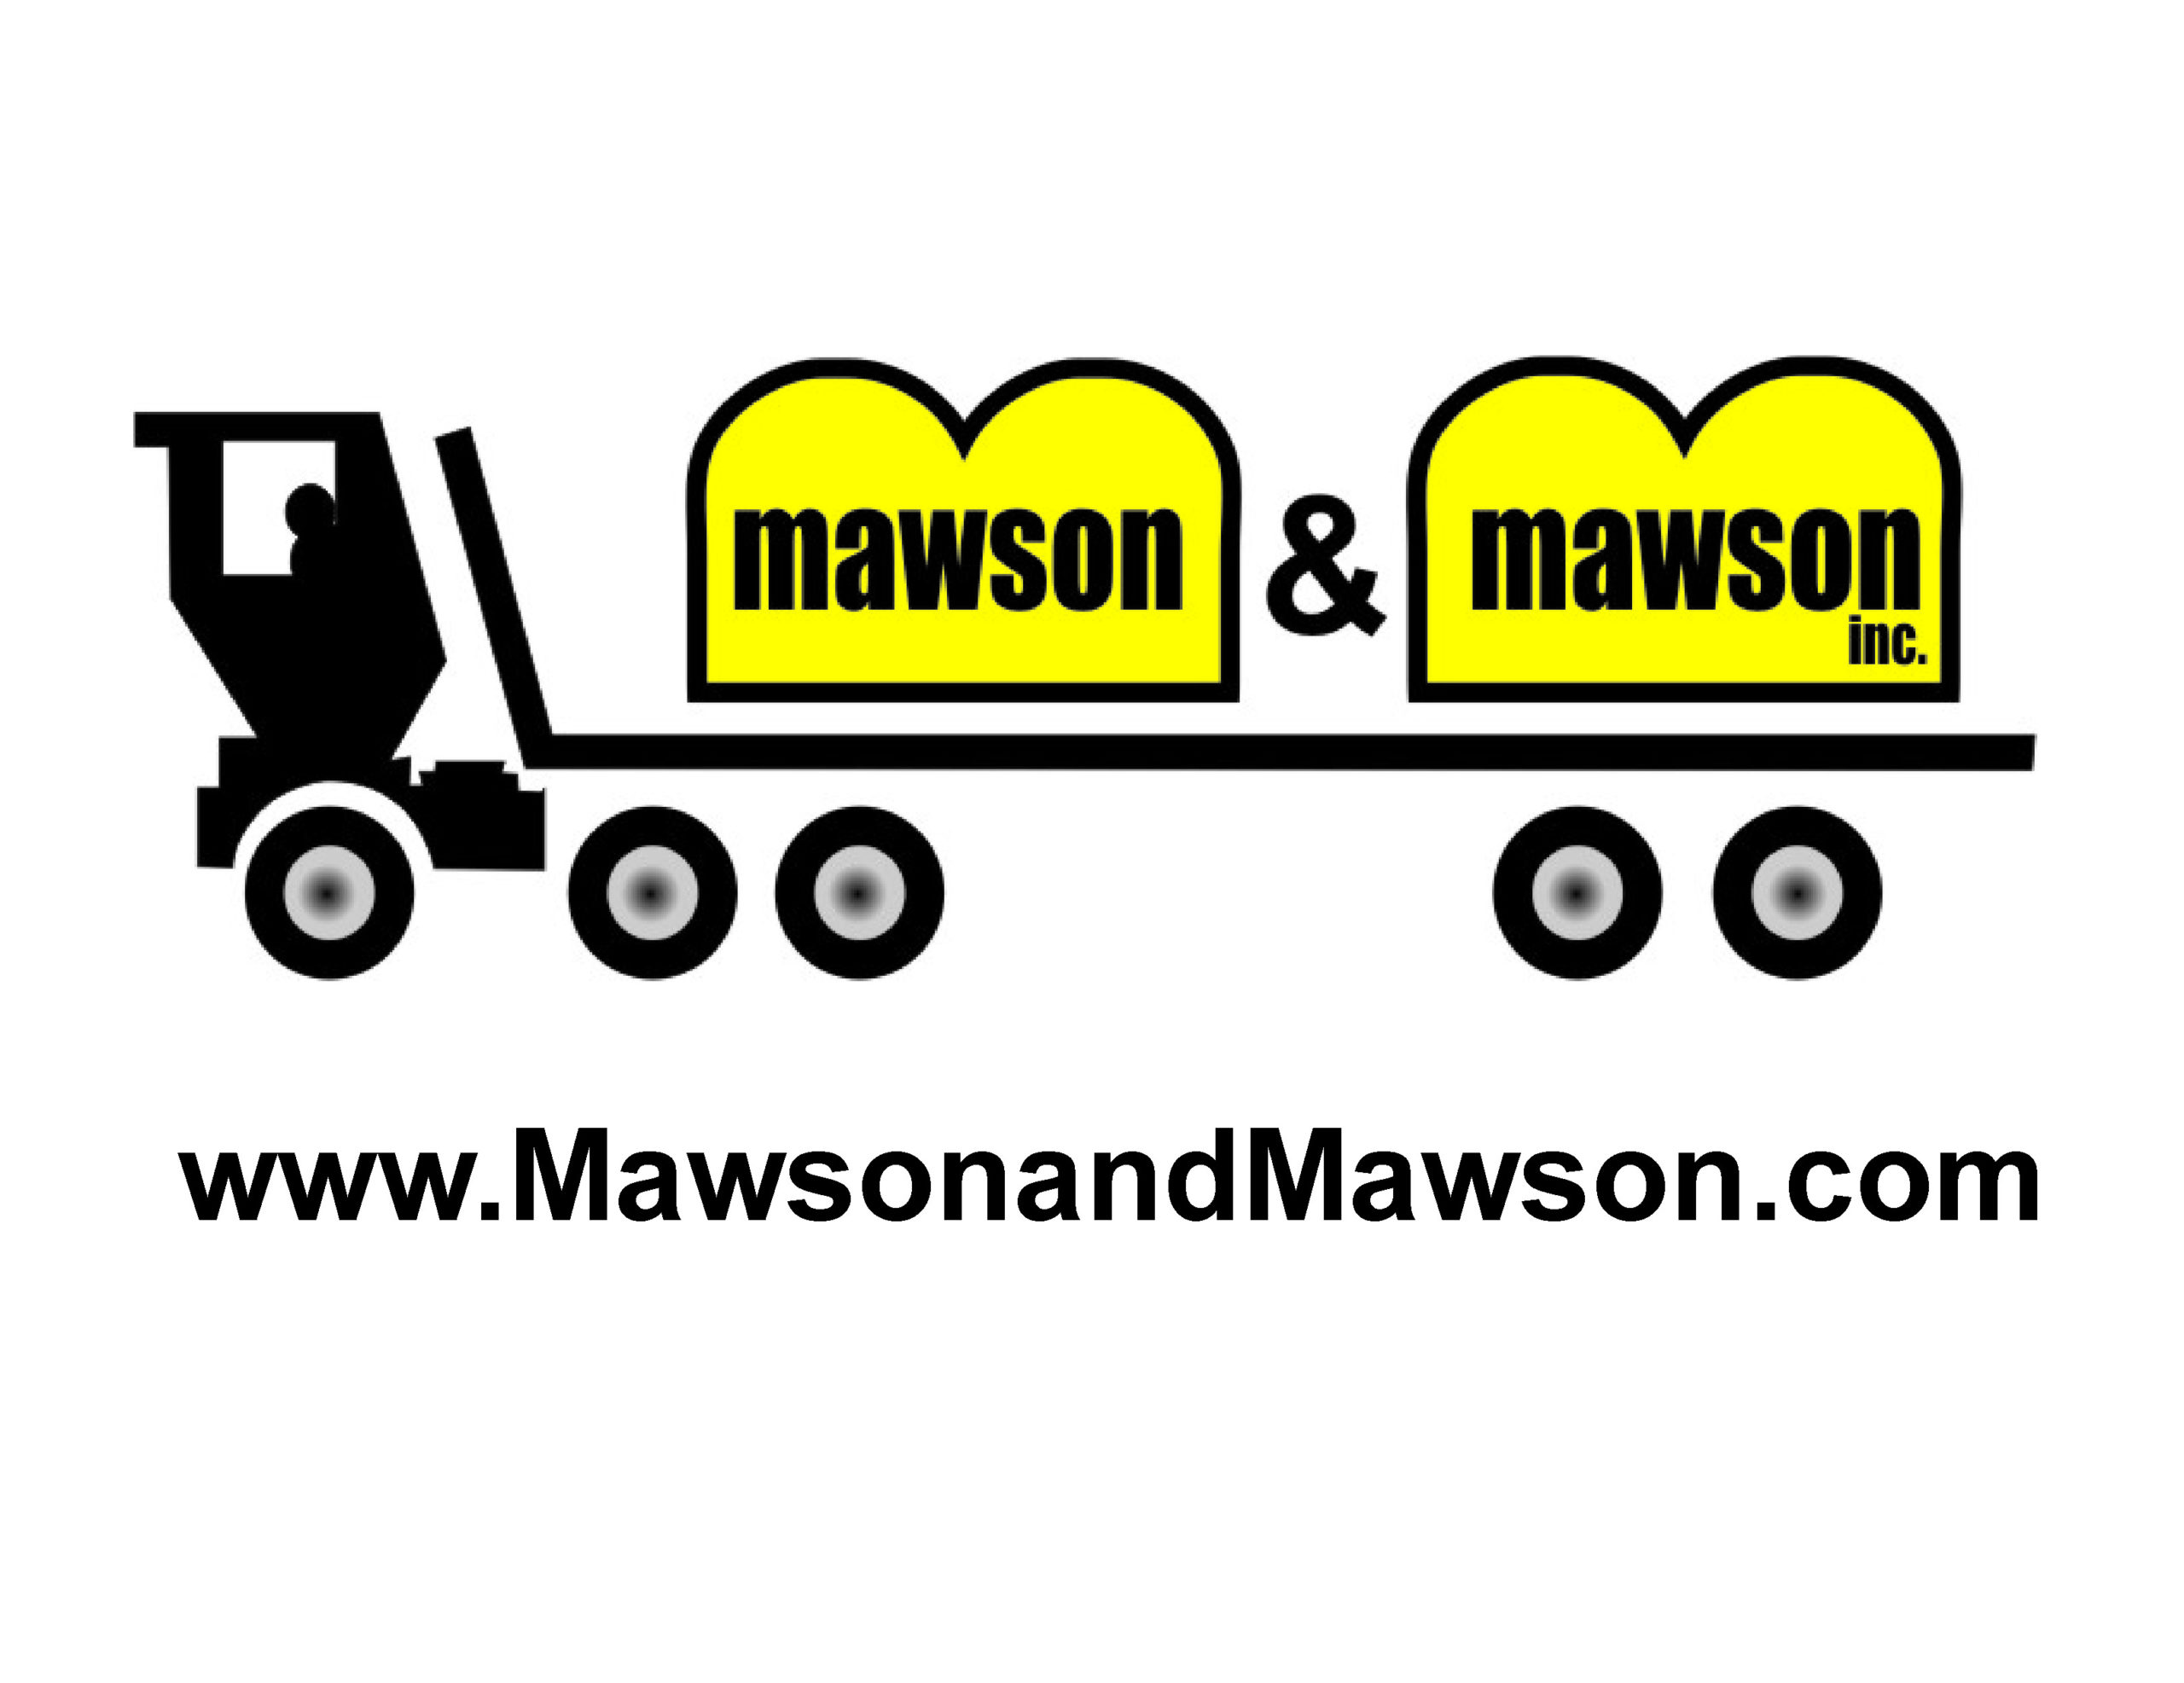 Mawson & Mawson